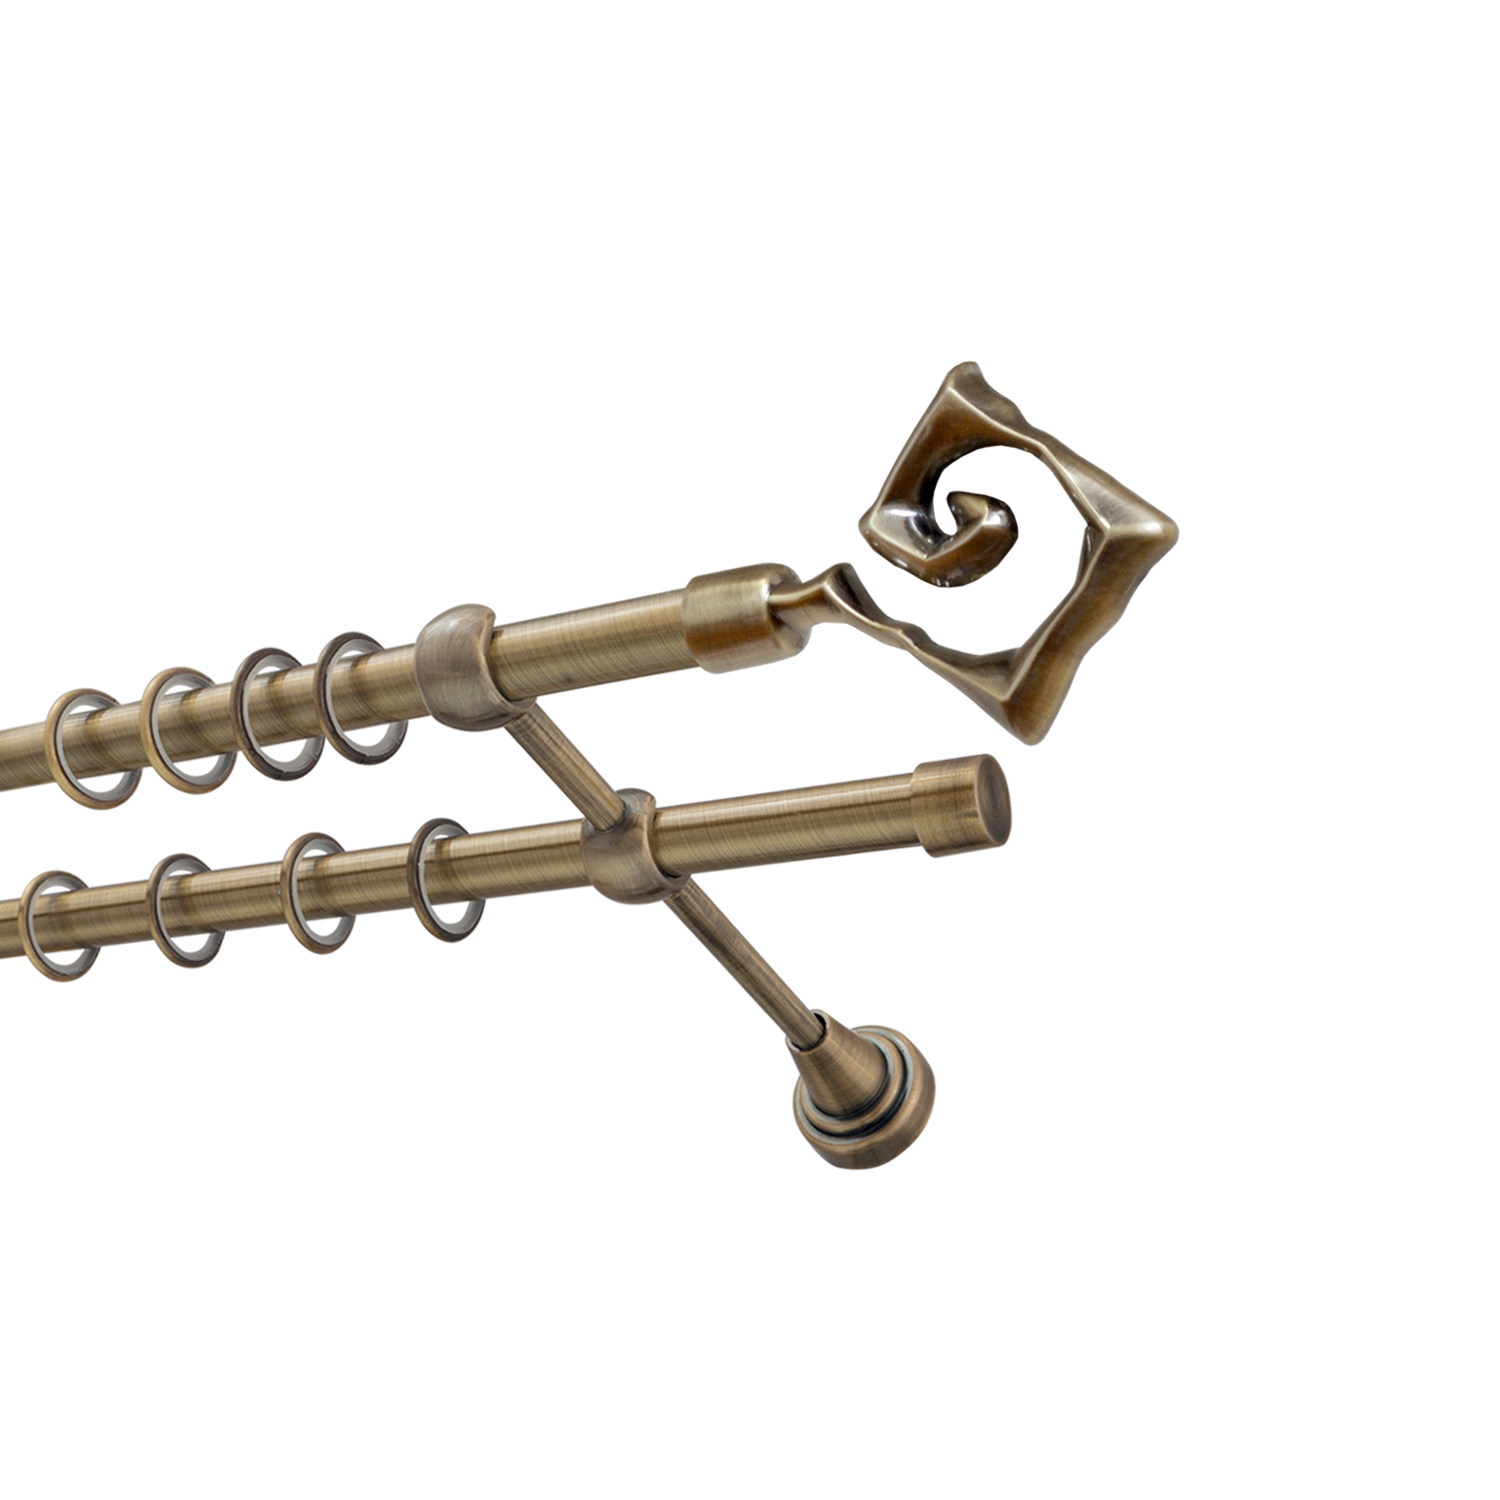 Металлический карниз для штор Крокус, двухрядный 16/16 мм, бронза, гладкая штанга, длина 240 см - фото Wikidecor.ru